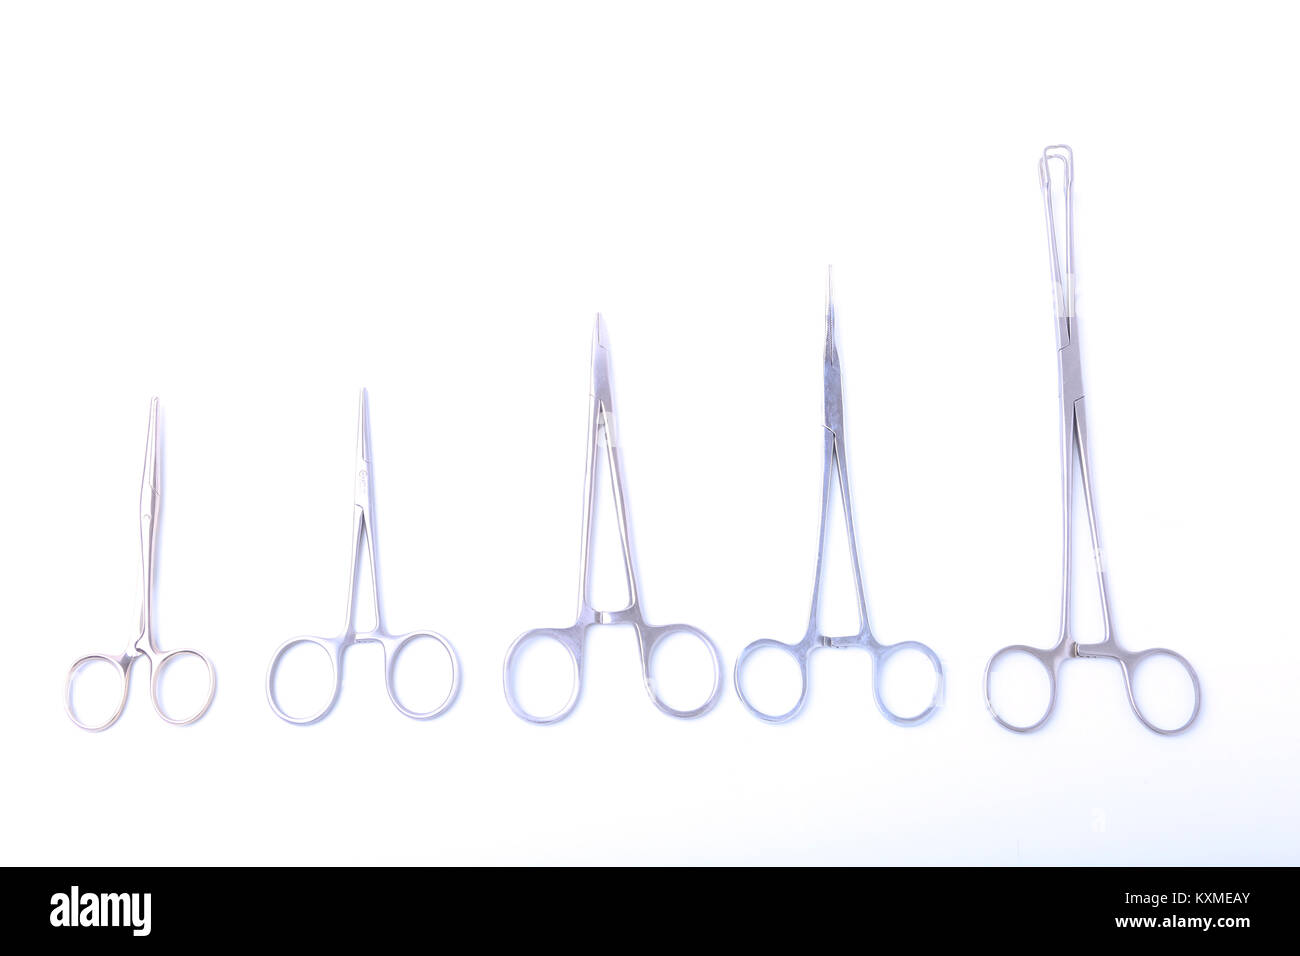 Chirurg Werkzeuge - Schere für Chirurgie - auf weißem Hintergrund Stockfoto